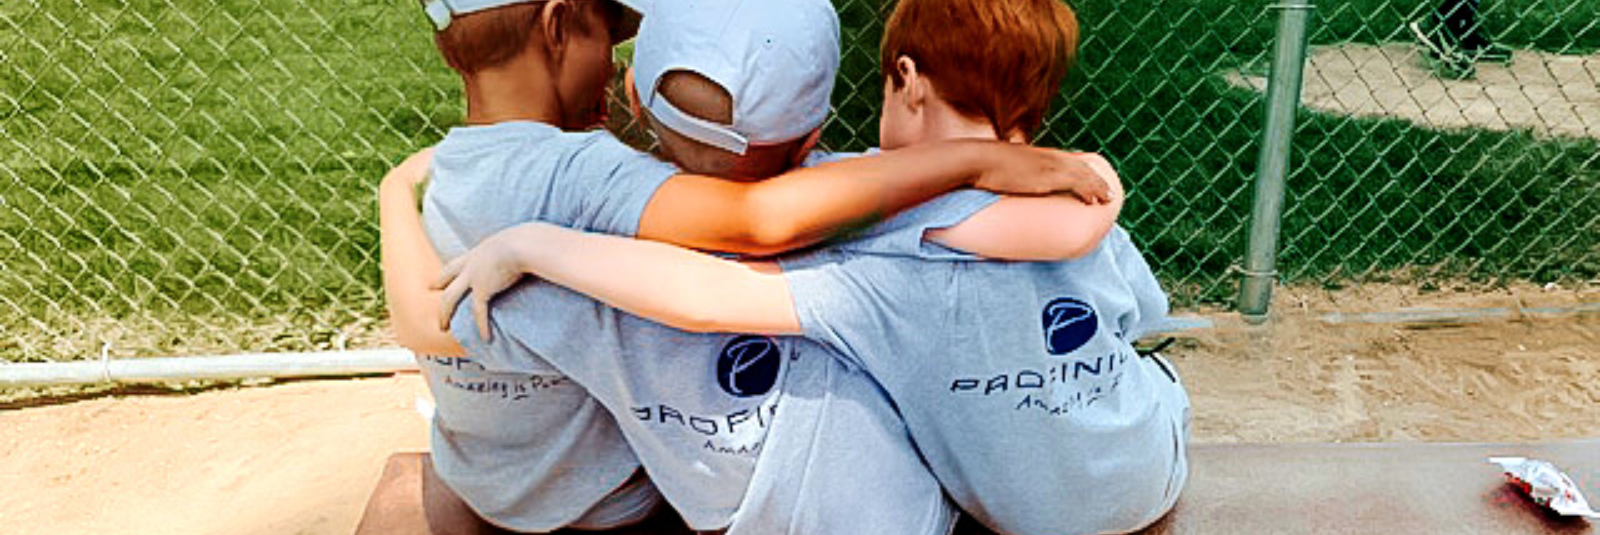 kids hugging wearing profinium t-shirts